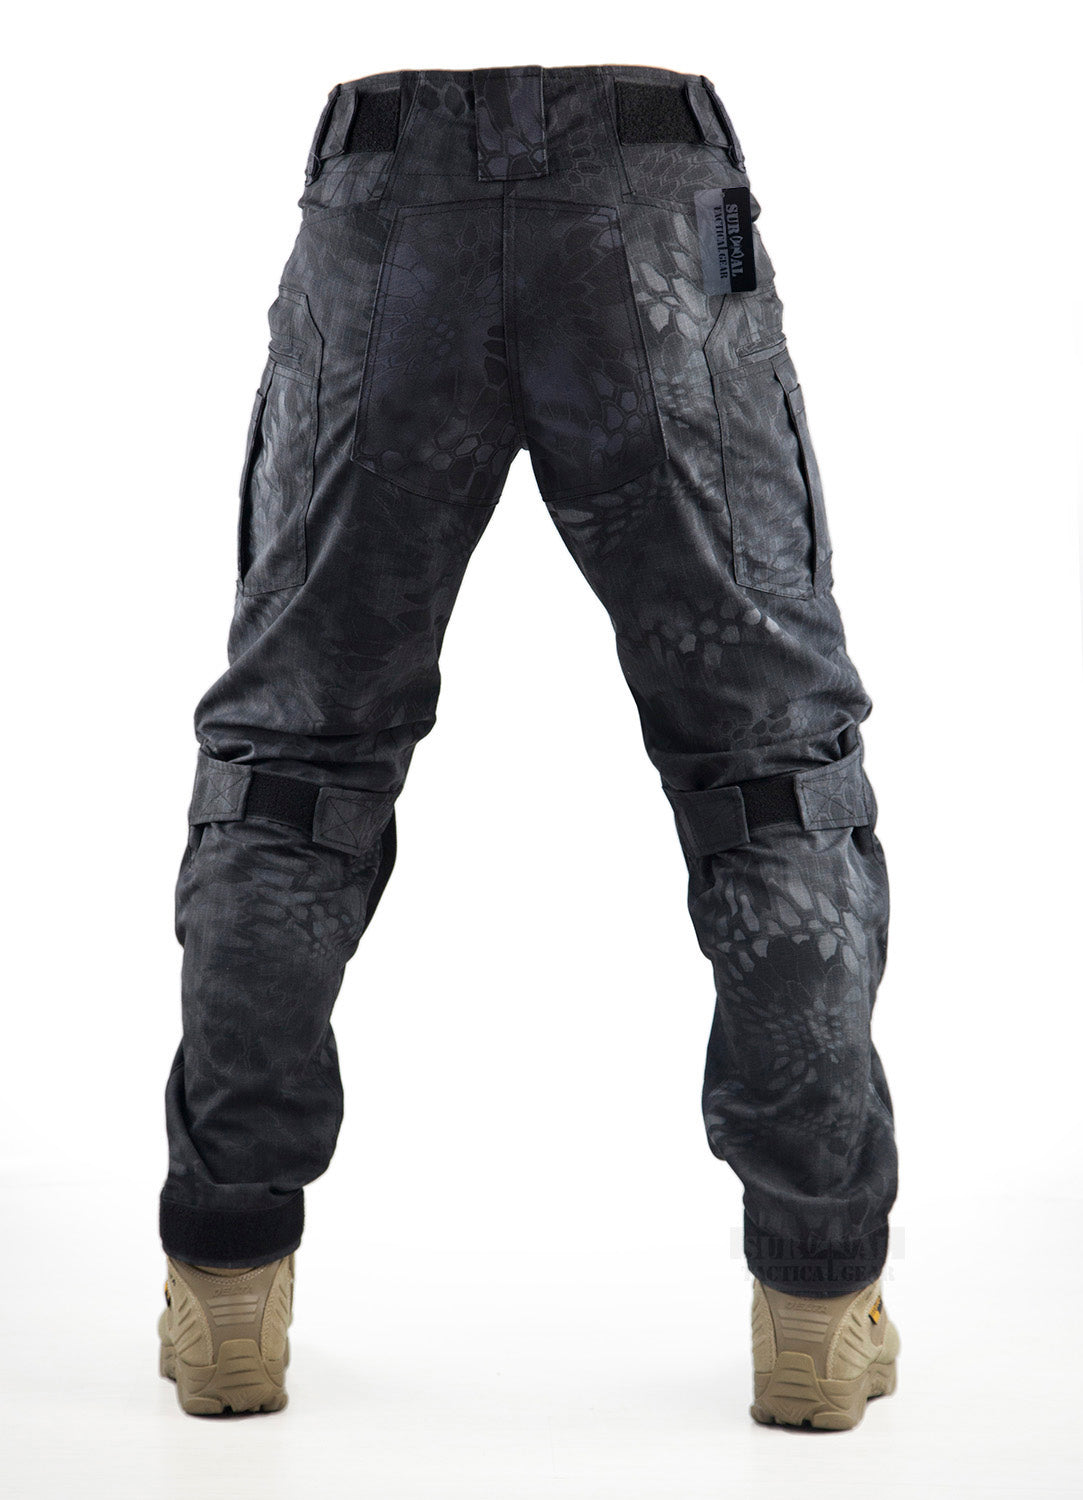 top3besttacticalpantswithkneepadsguide  Tactical pants Black  tactical pants Tactical